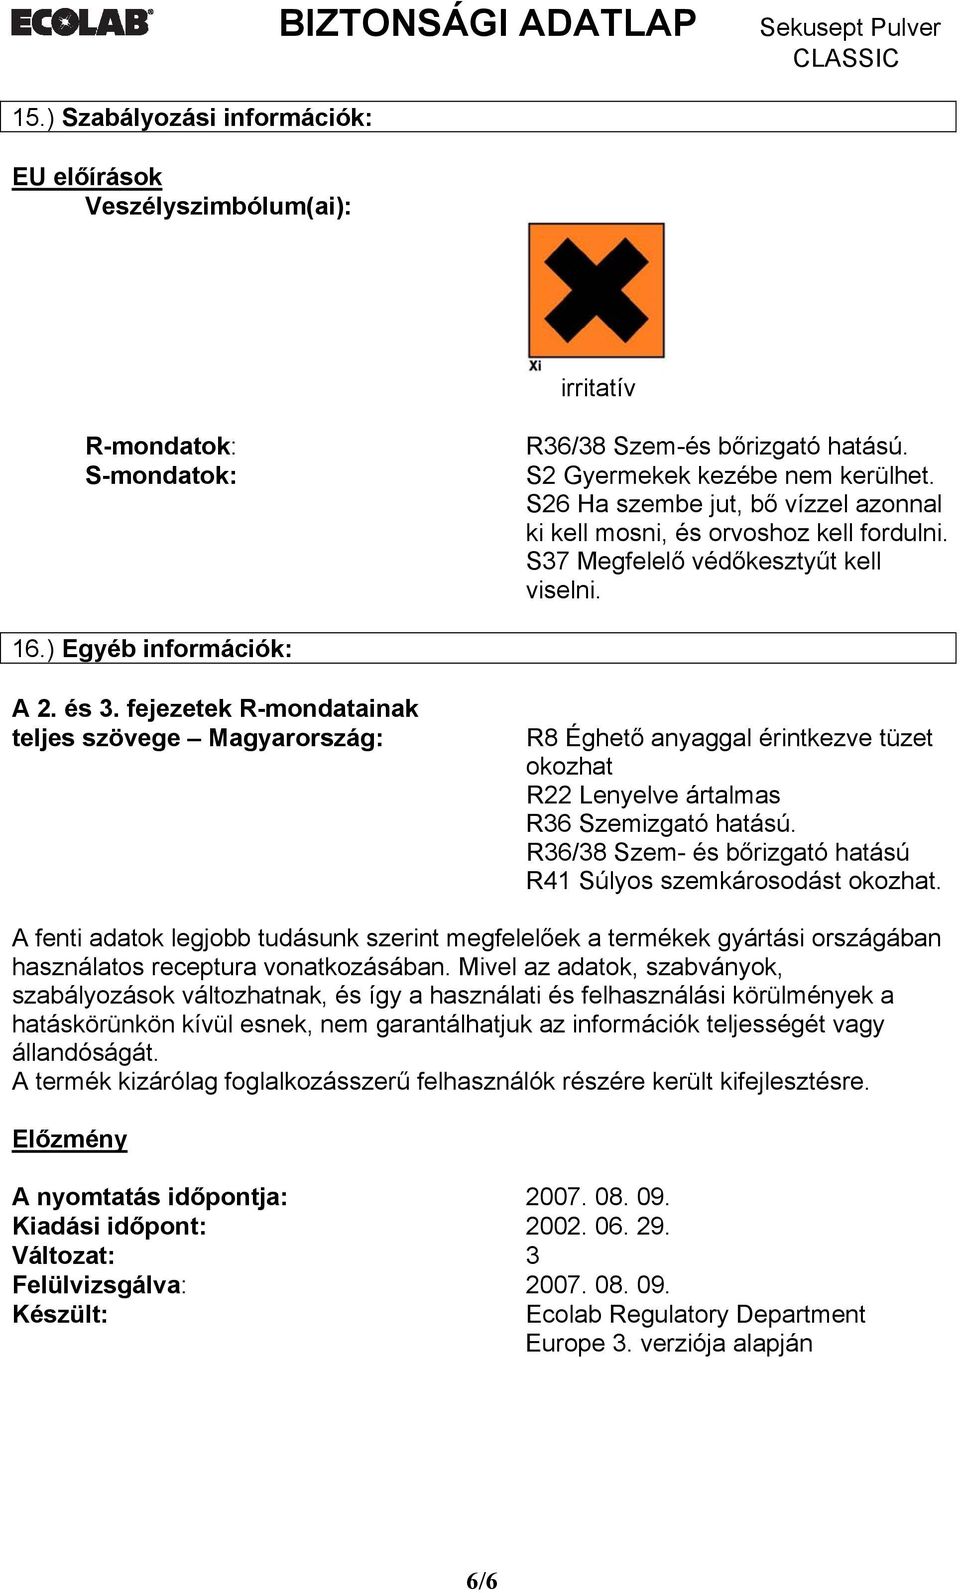 fejezetek R-mondatainak teljes szövege Magyarország: R8 Éghető anyaggal érintkezve tüzet okozhat R22 Lenyelve ártalmas R36 Szemizgató hatású.